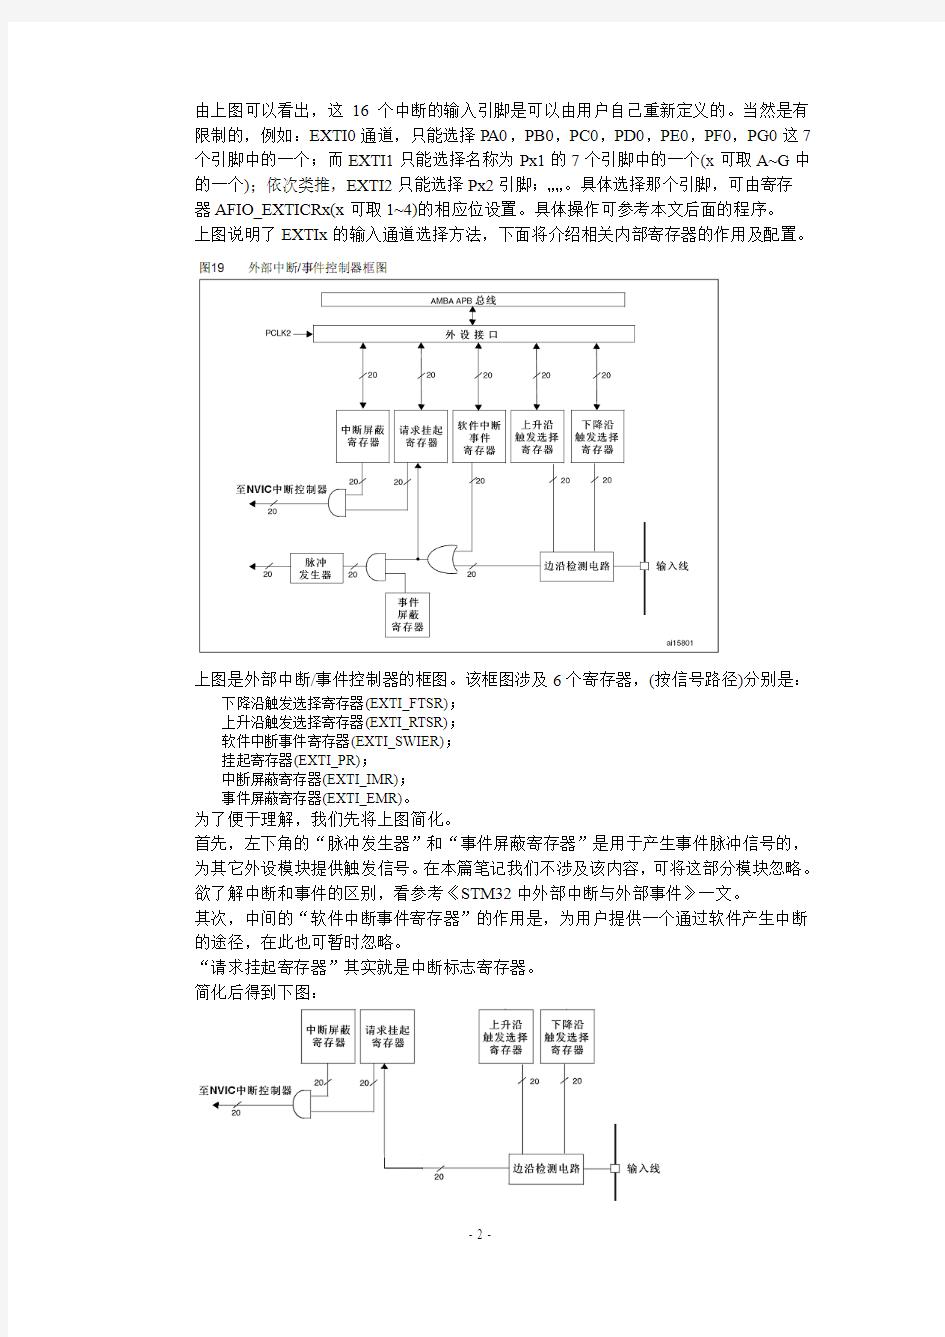 S.D.Lu的STM32学习笔记(7)外部中断实验